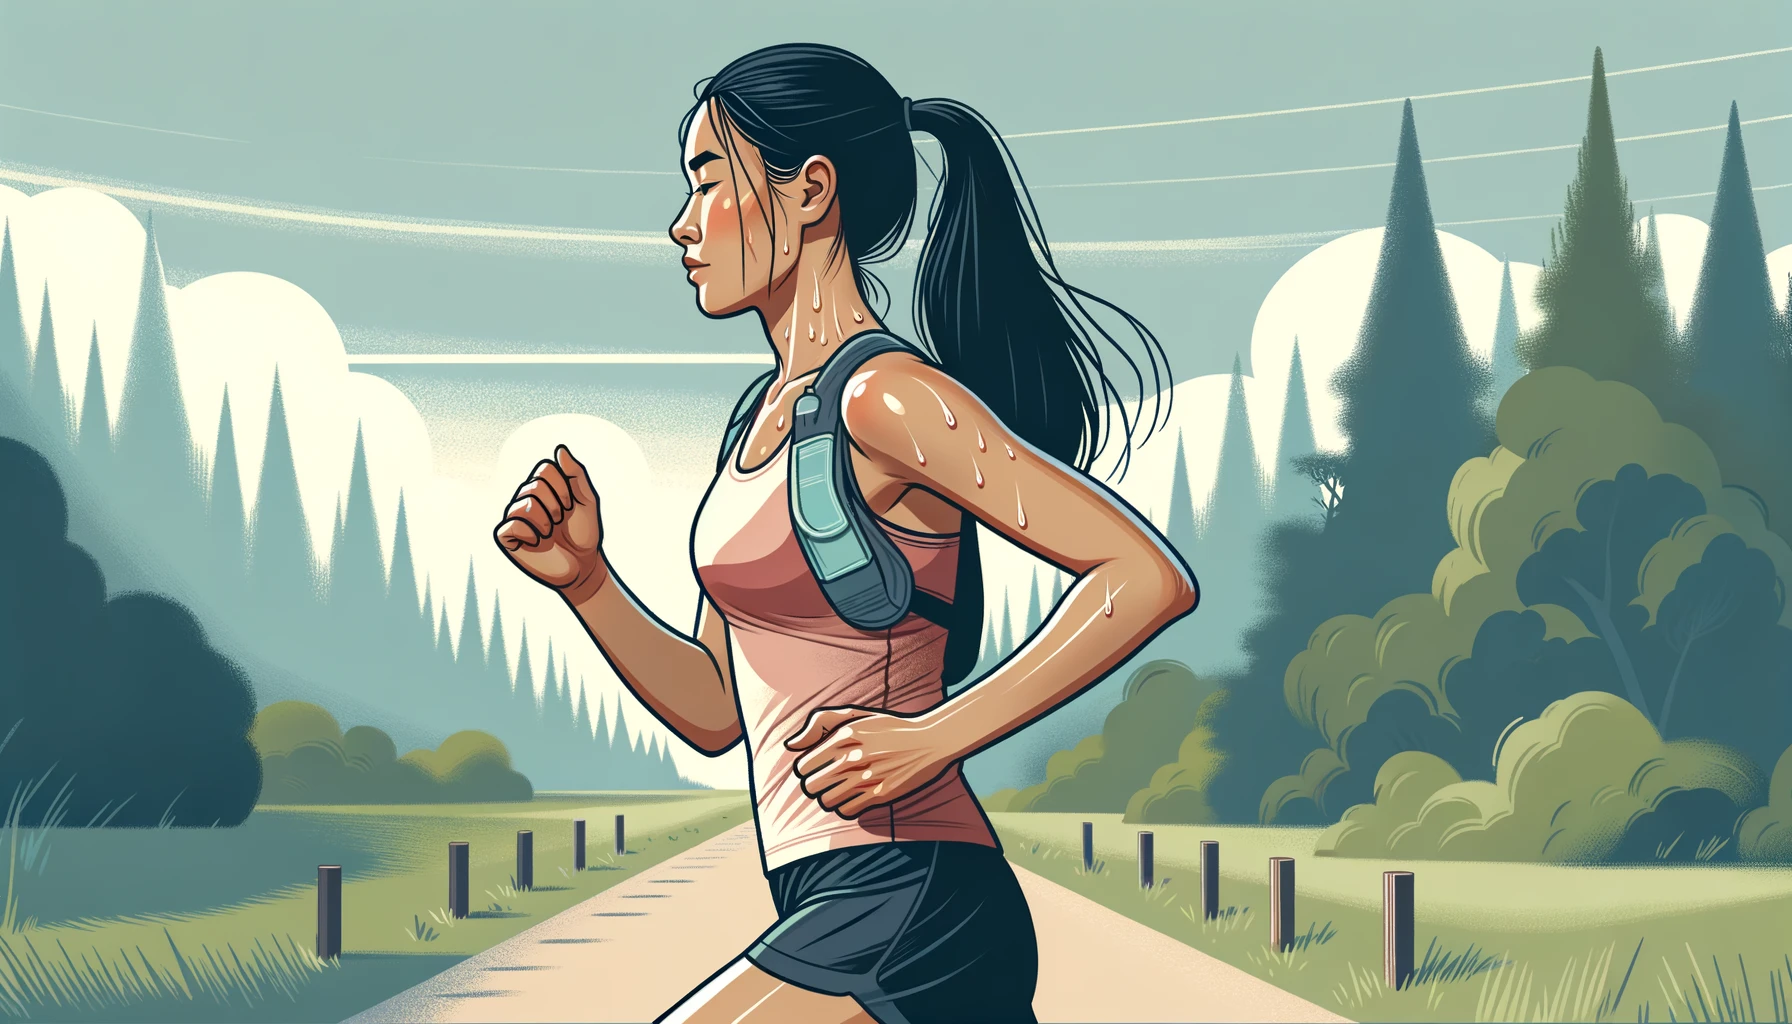 Illustration einer Läuferin, einer Frau asiatischer Abstammung, aus einer Seitenansicht. Sie ist mitten im Lauf, der Schweiß steht ihr auf der Stirn und sie trägt einen Trinkgürtel.